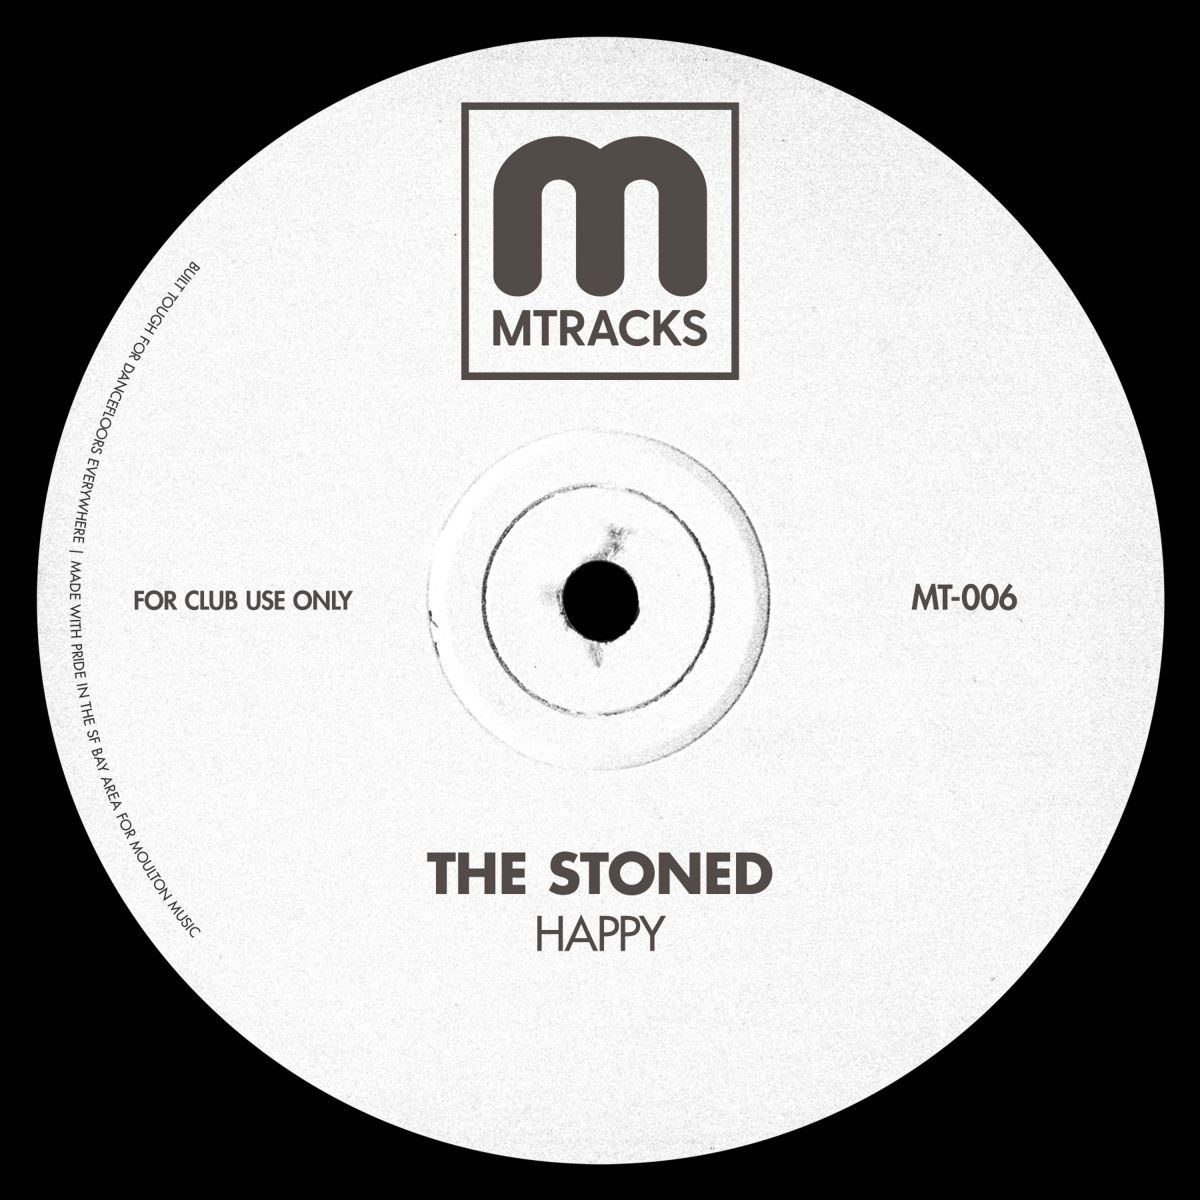 The Stoned - Happy / MTracks